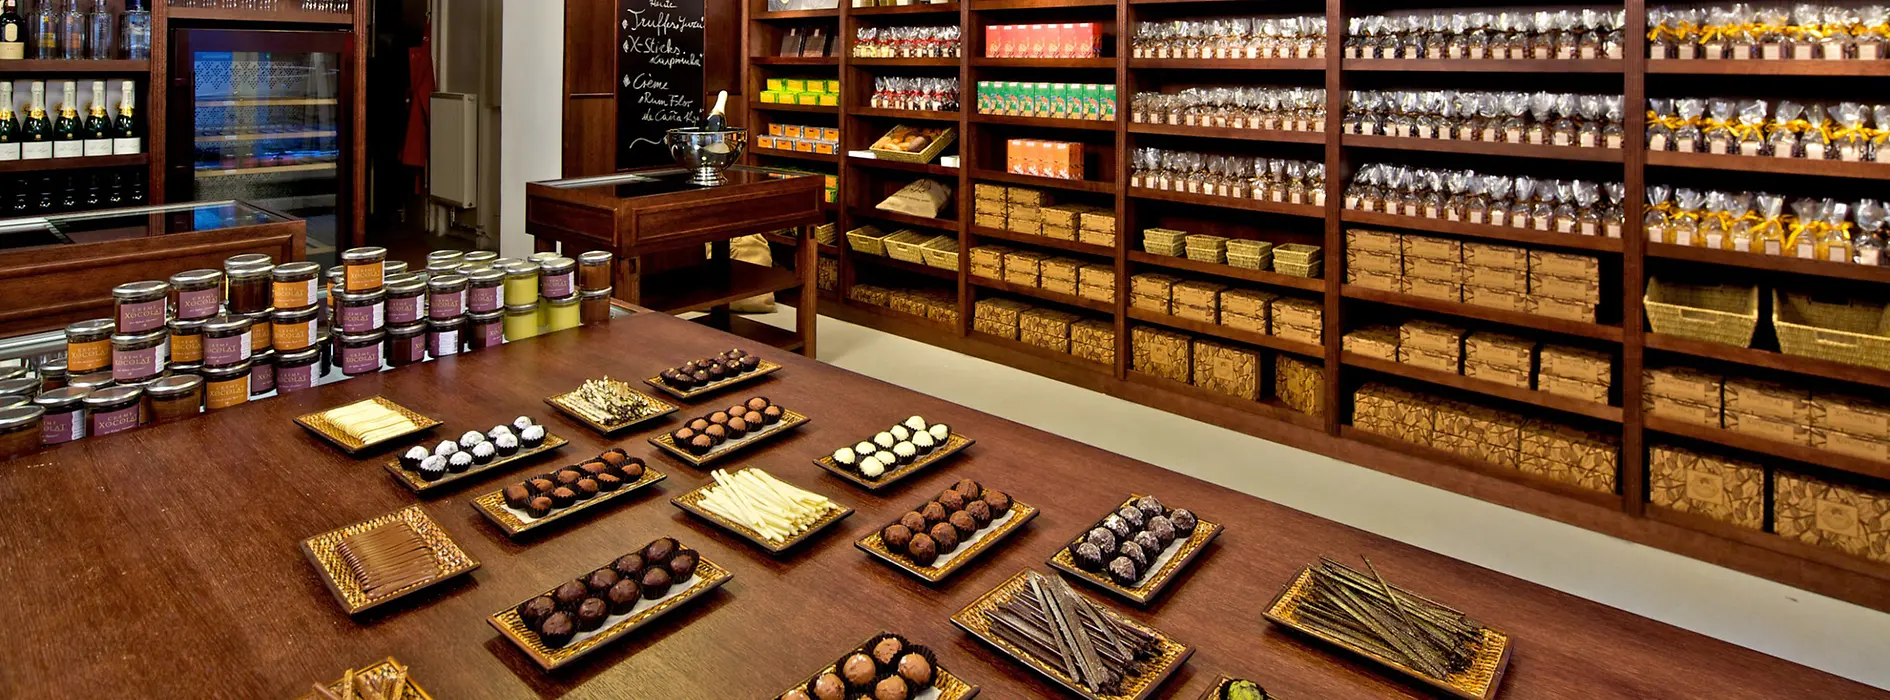 Kolekce bonbonů z manufaktury na čokoládu Xocolat